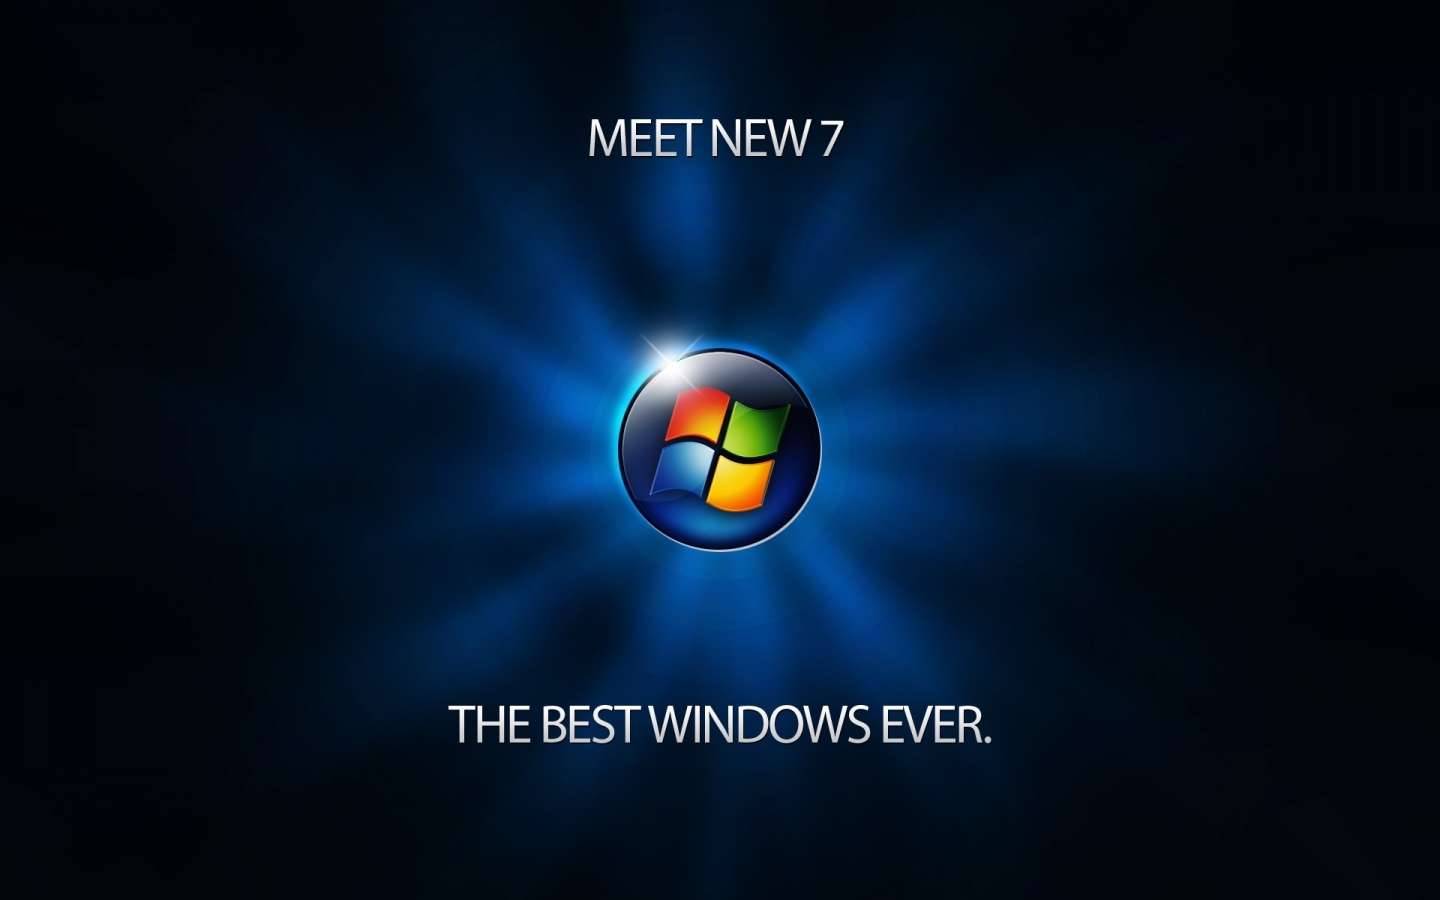 Meet Windows 7 for 1440 x 900 widescreen resolution